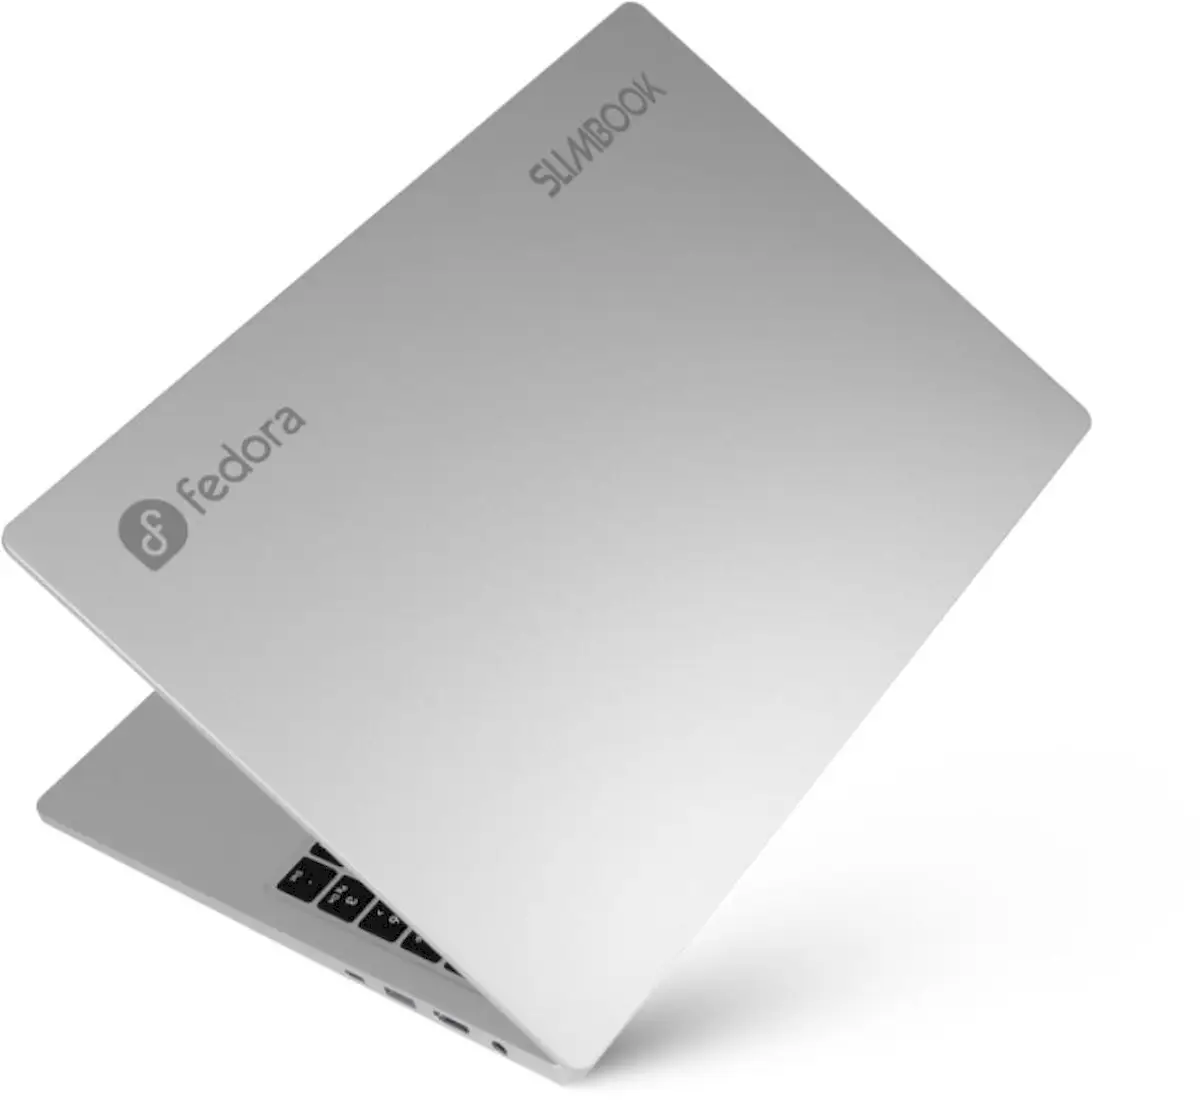 Fedora Slimbook 16, um laptop poderoso que vem com o Fedora